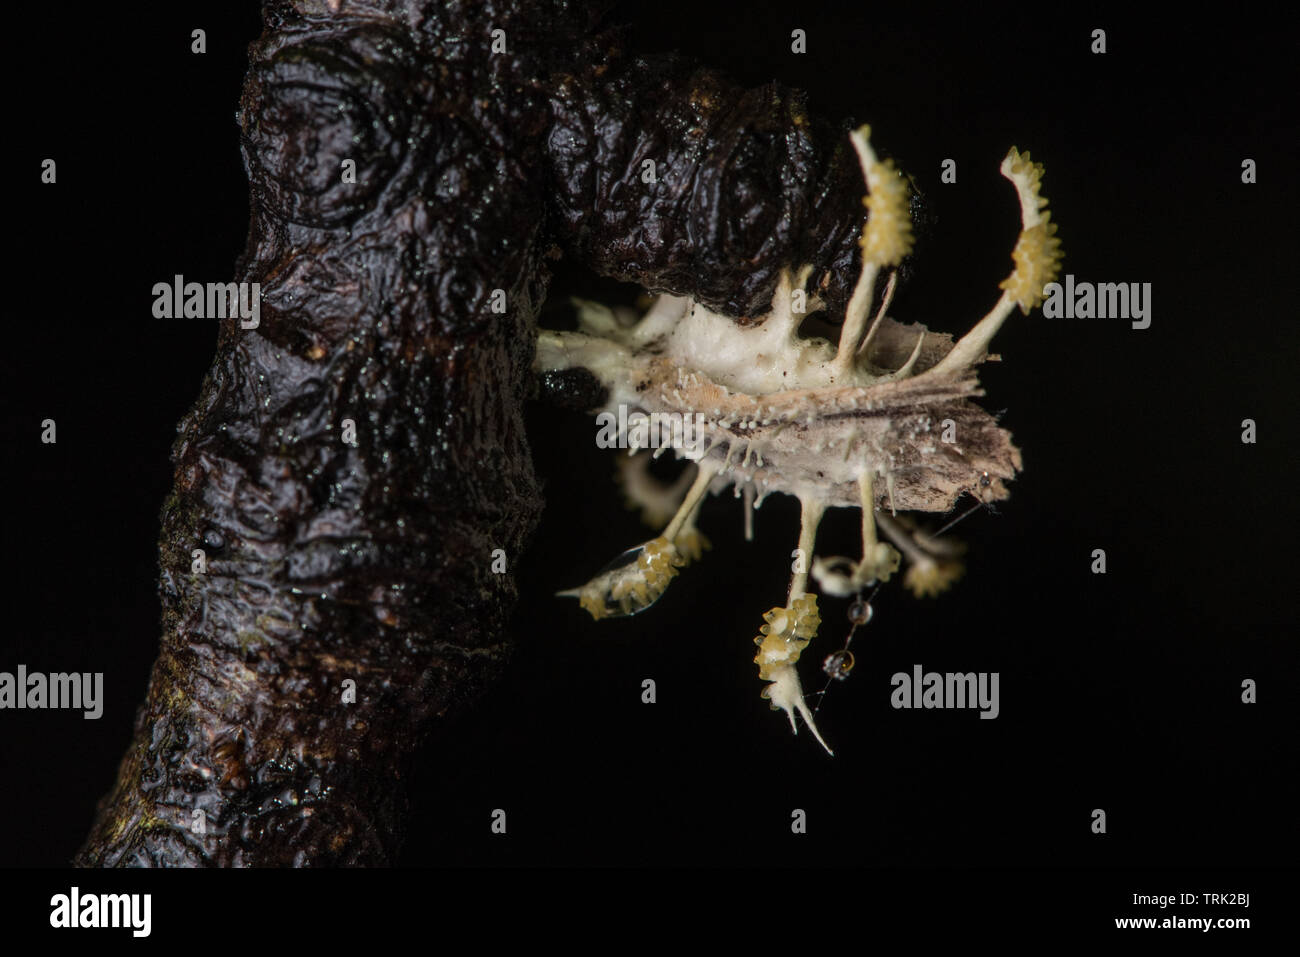 Una falena ucciso da un fungo entomopathogenic, forse un cordyceps obiettivi che questa specie. Foto Stock